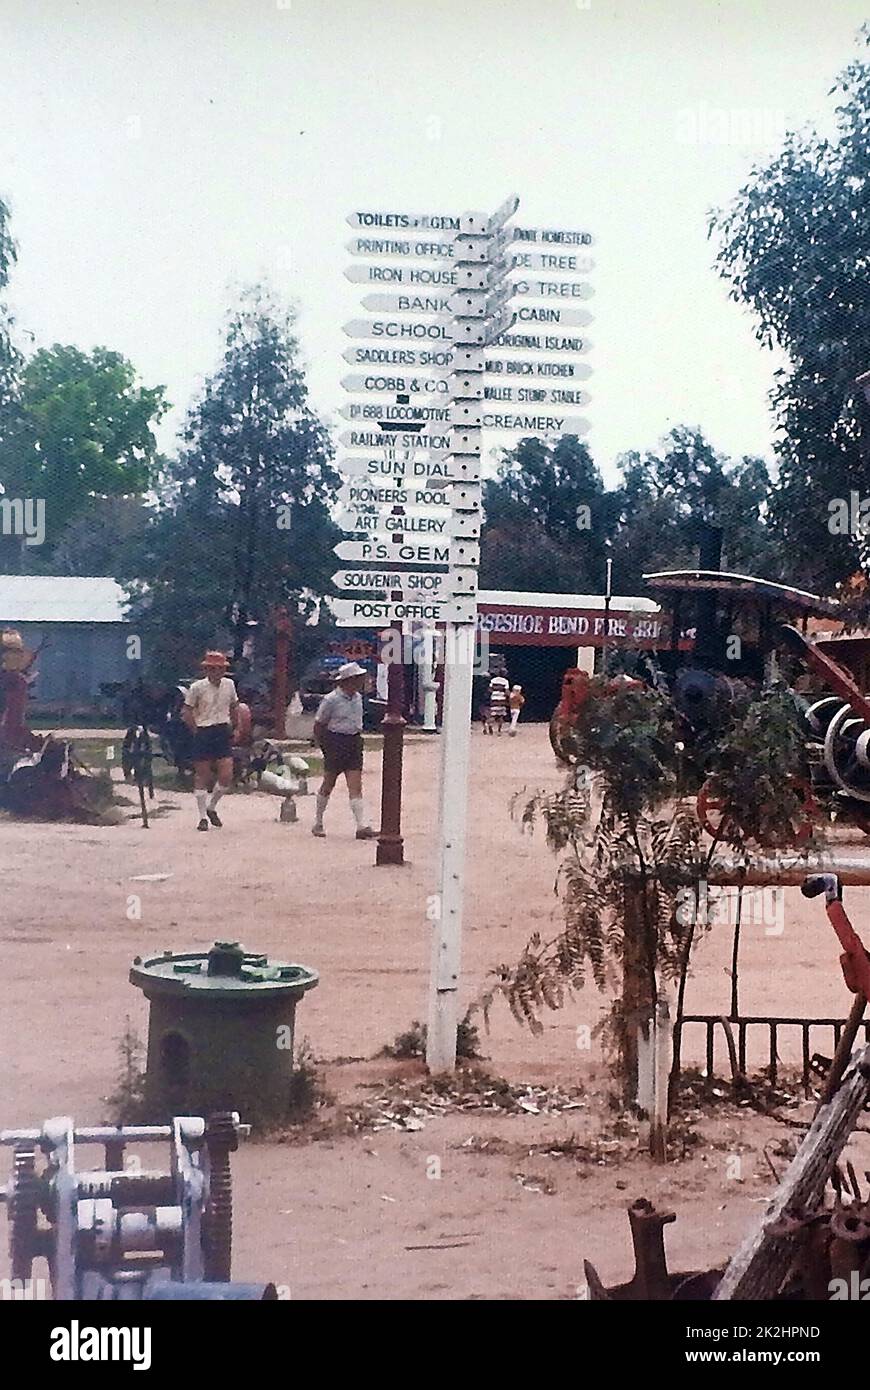 Imagen de 1970 - ESTABLECIDO EN 1963, el Pioneer Settlement Museum en Swan Hill, Australia, fue el primer museo al aire libre establecido en Australia. Desde ese empate se ha desarrollado y crecido para incluir el ultra-moderno Heartbeat del espectáculo de luz láser Murray . Foto de stock